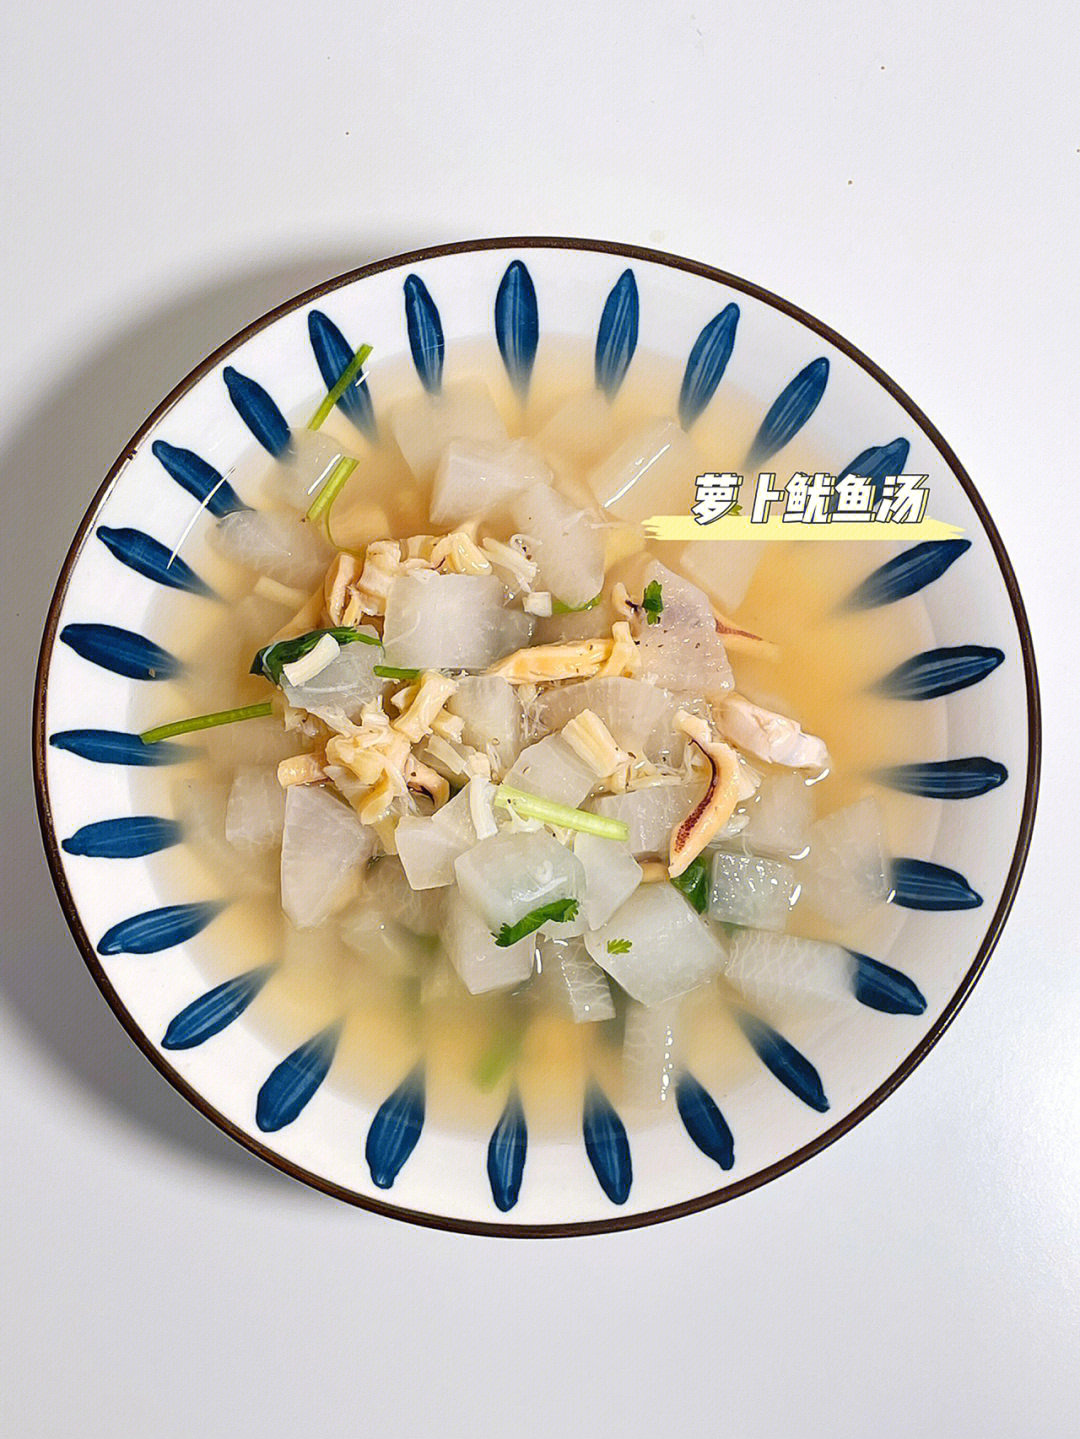 鱿鱼干炖萝卜排骨汤图片